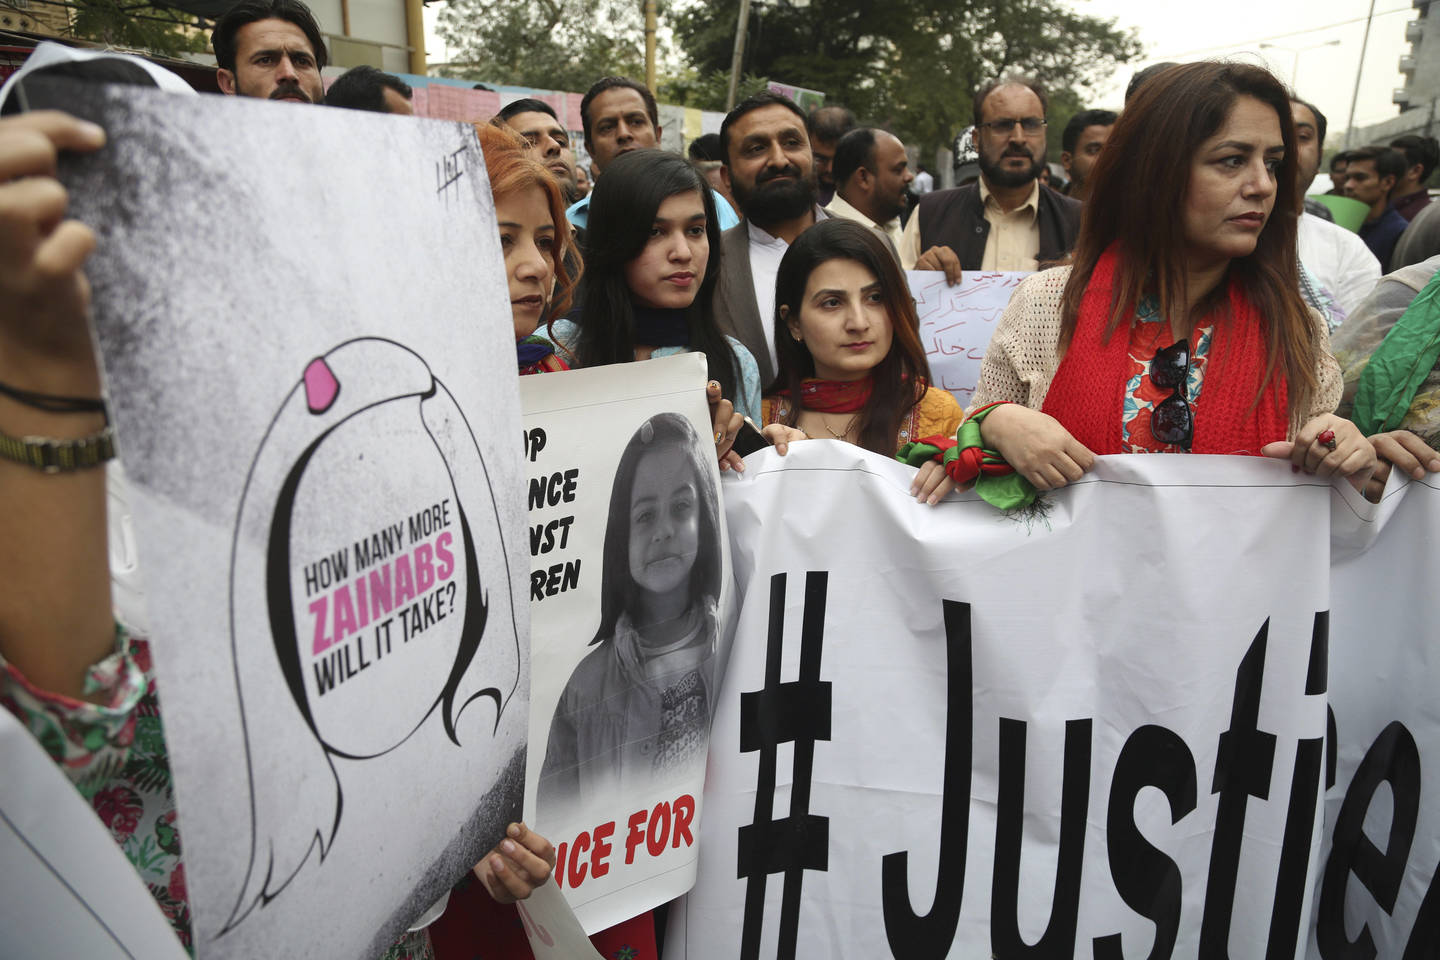  Mažoji Zainab ne vienintelė mergaitė, kuri nužudyta Pakistane. Tokių atveju kaip jos pasitaiko labai daug.<br> AP nuotr.